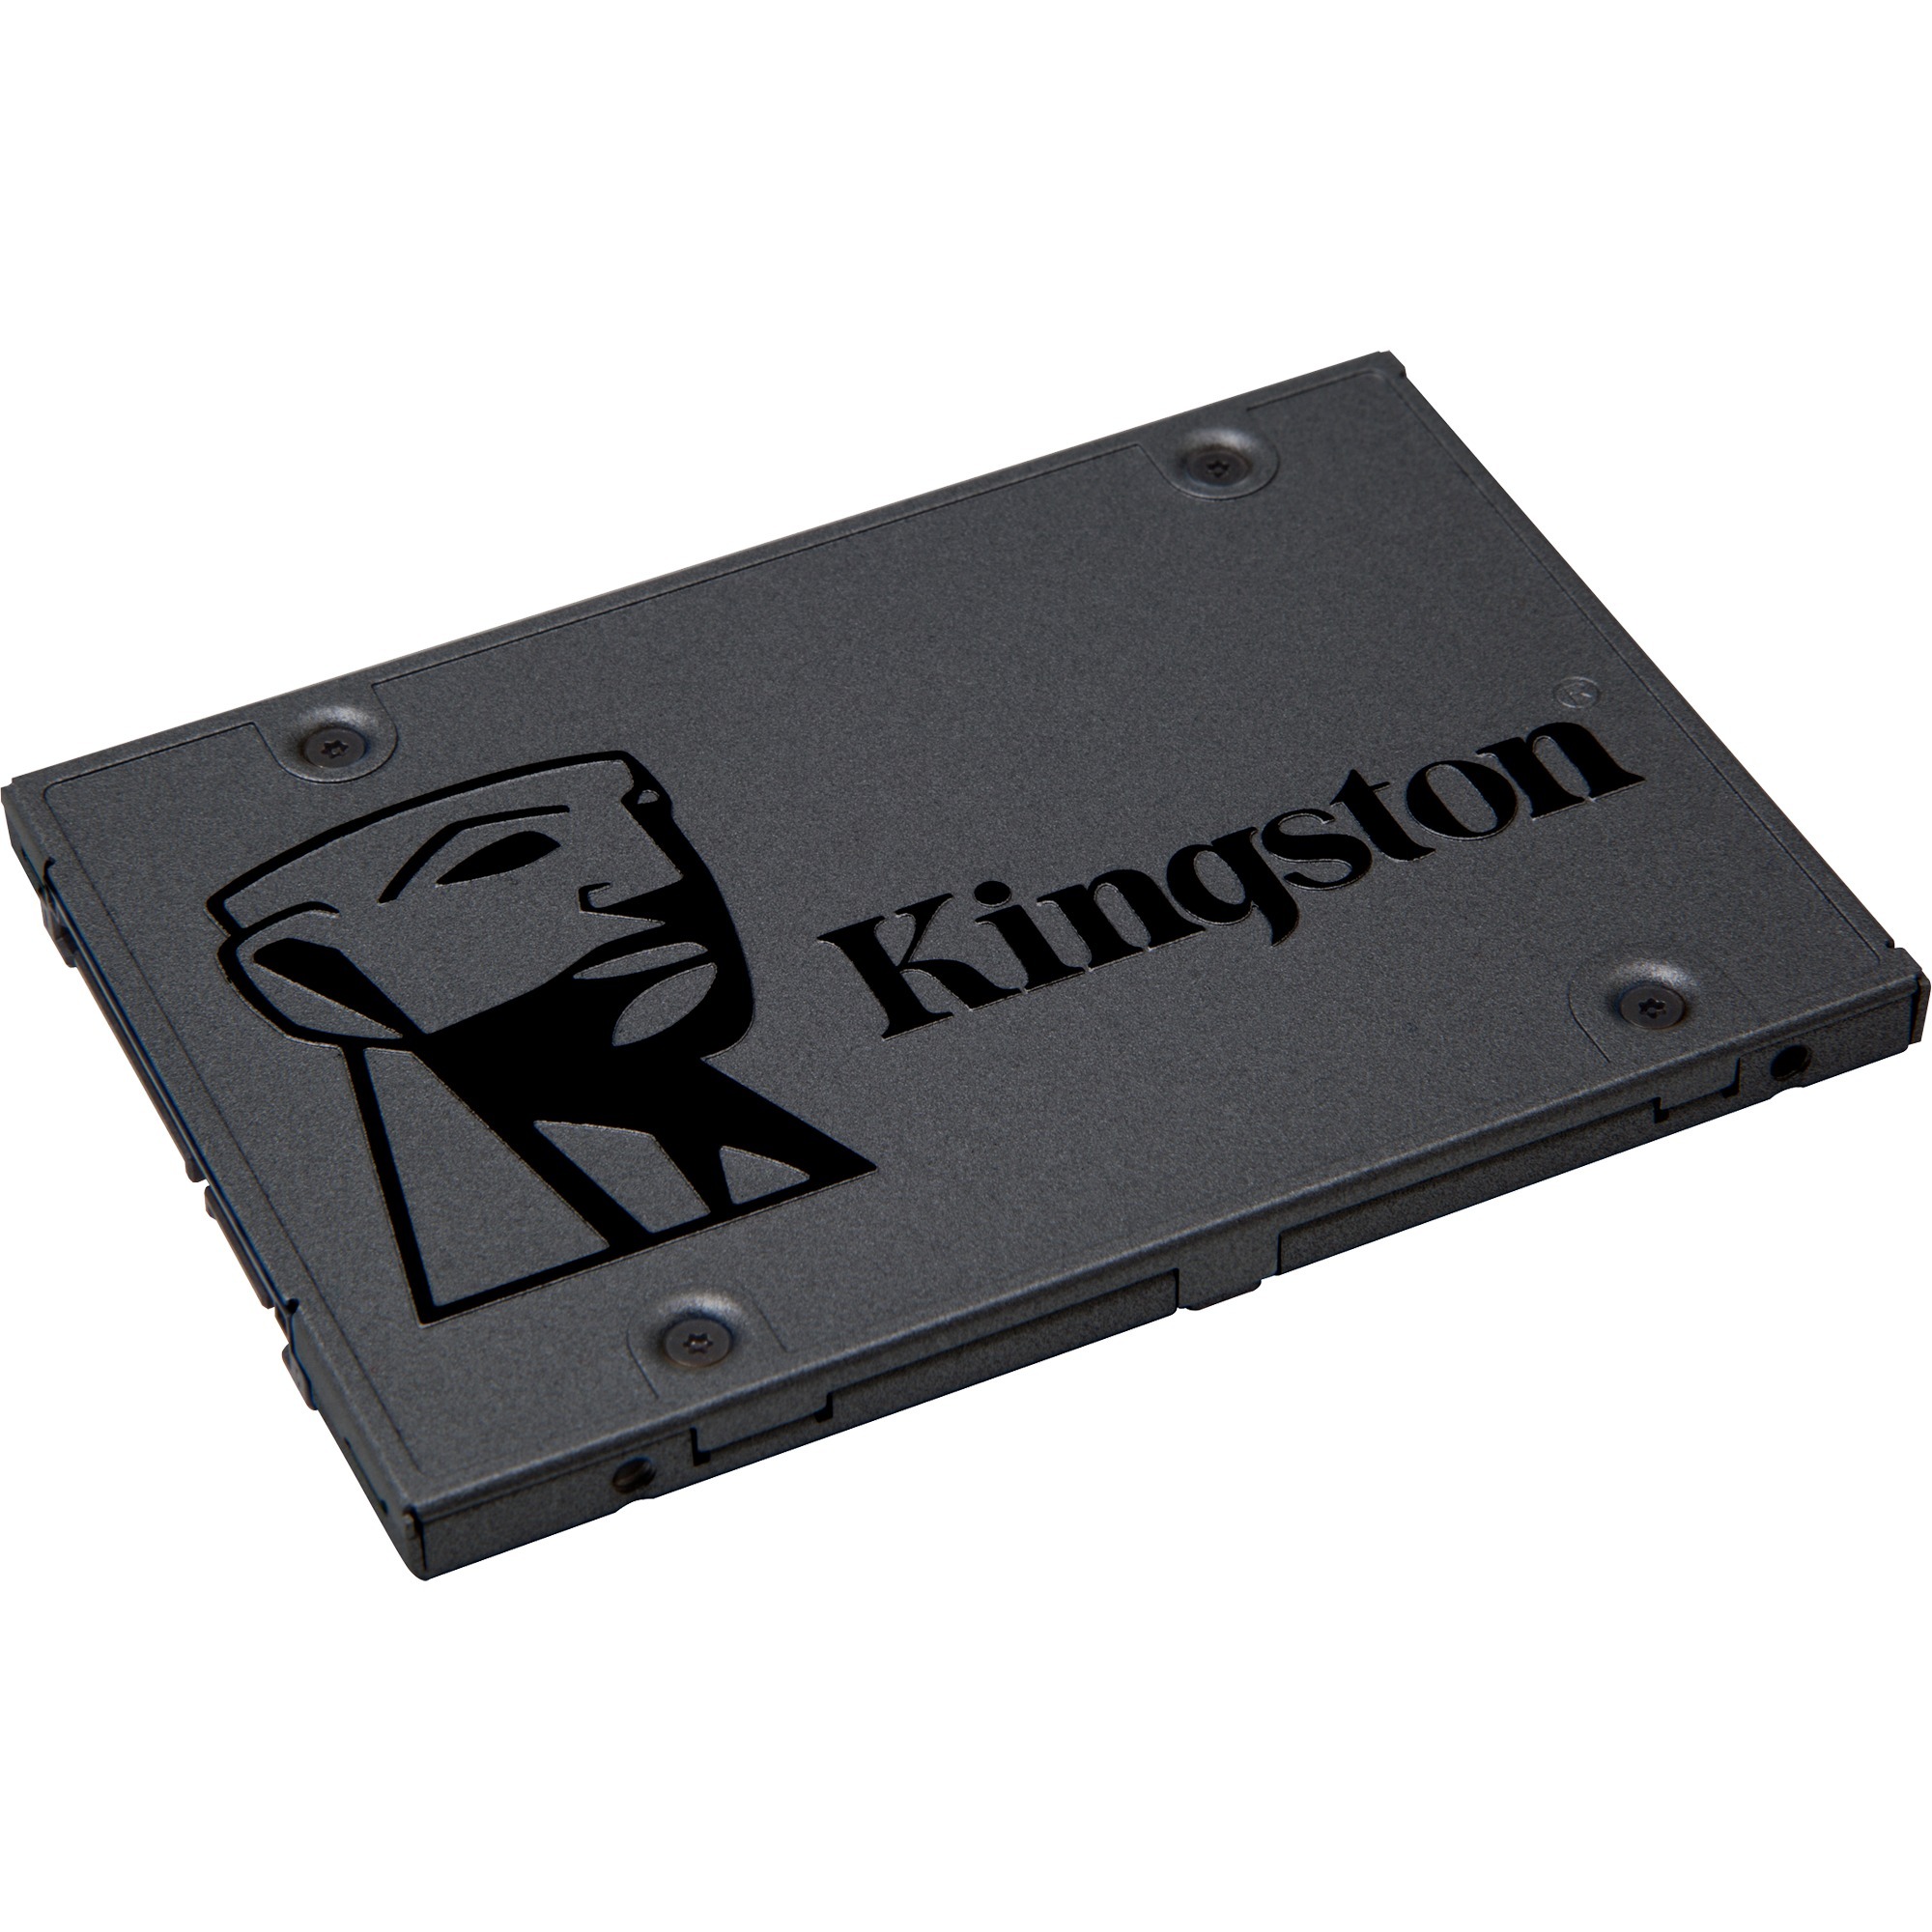 Image of Alternate - A400 480 GB, SSD online einkaufen bei Alternate